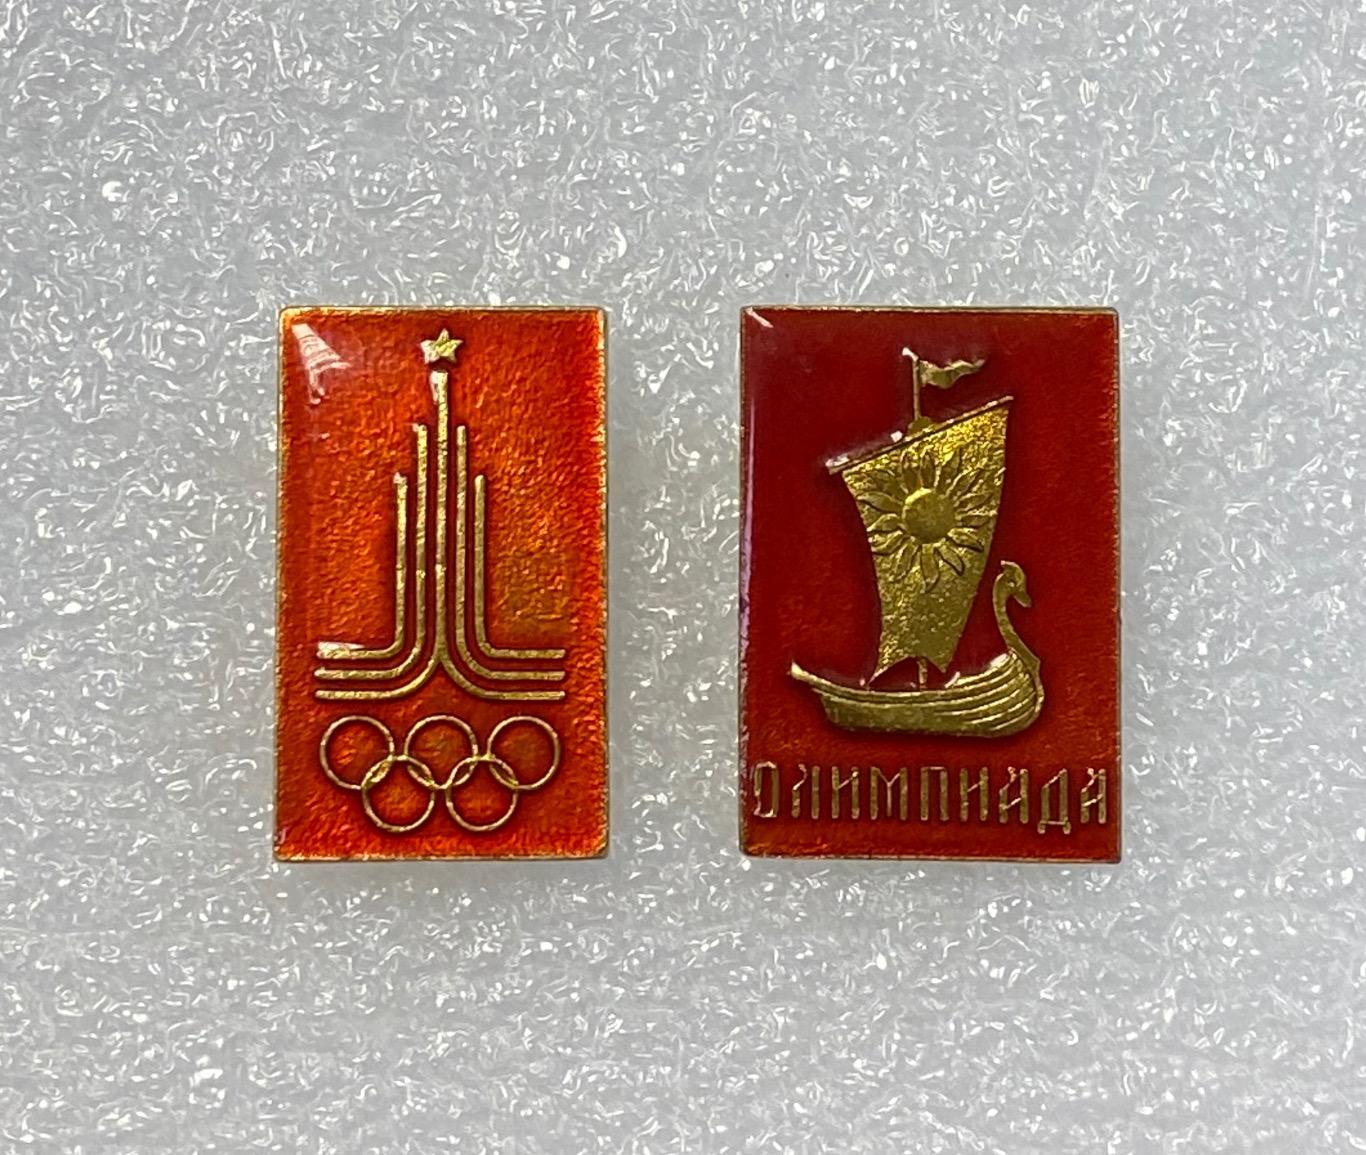 Москва-80 Олимпиада, Олимпийская ладья и символика, набор 2 значка